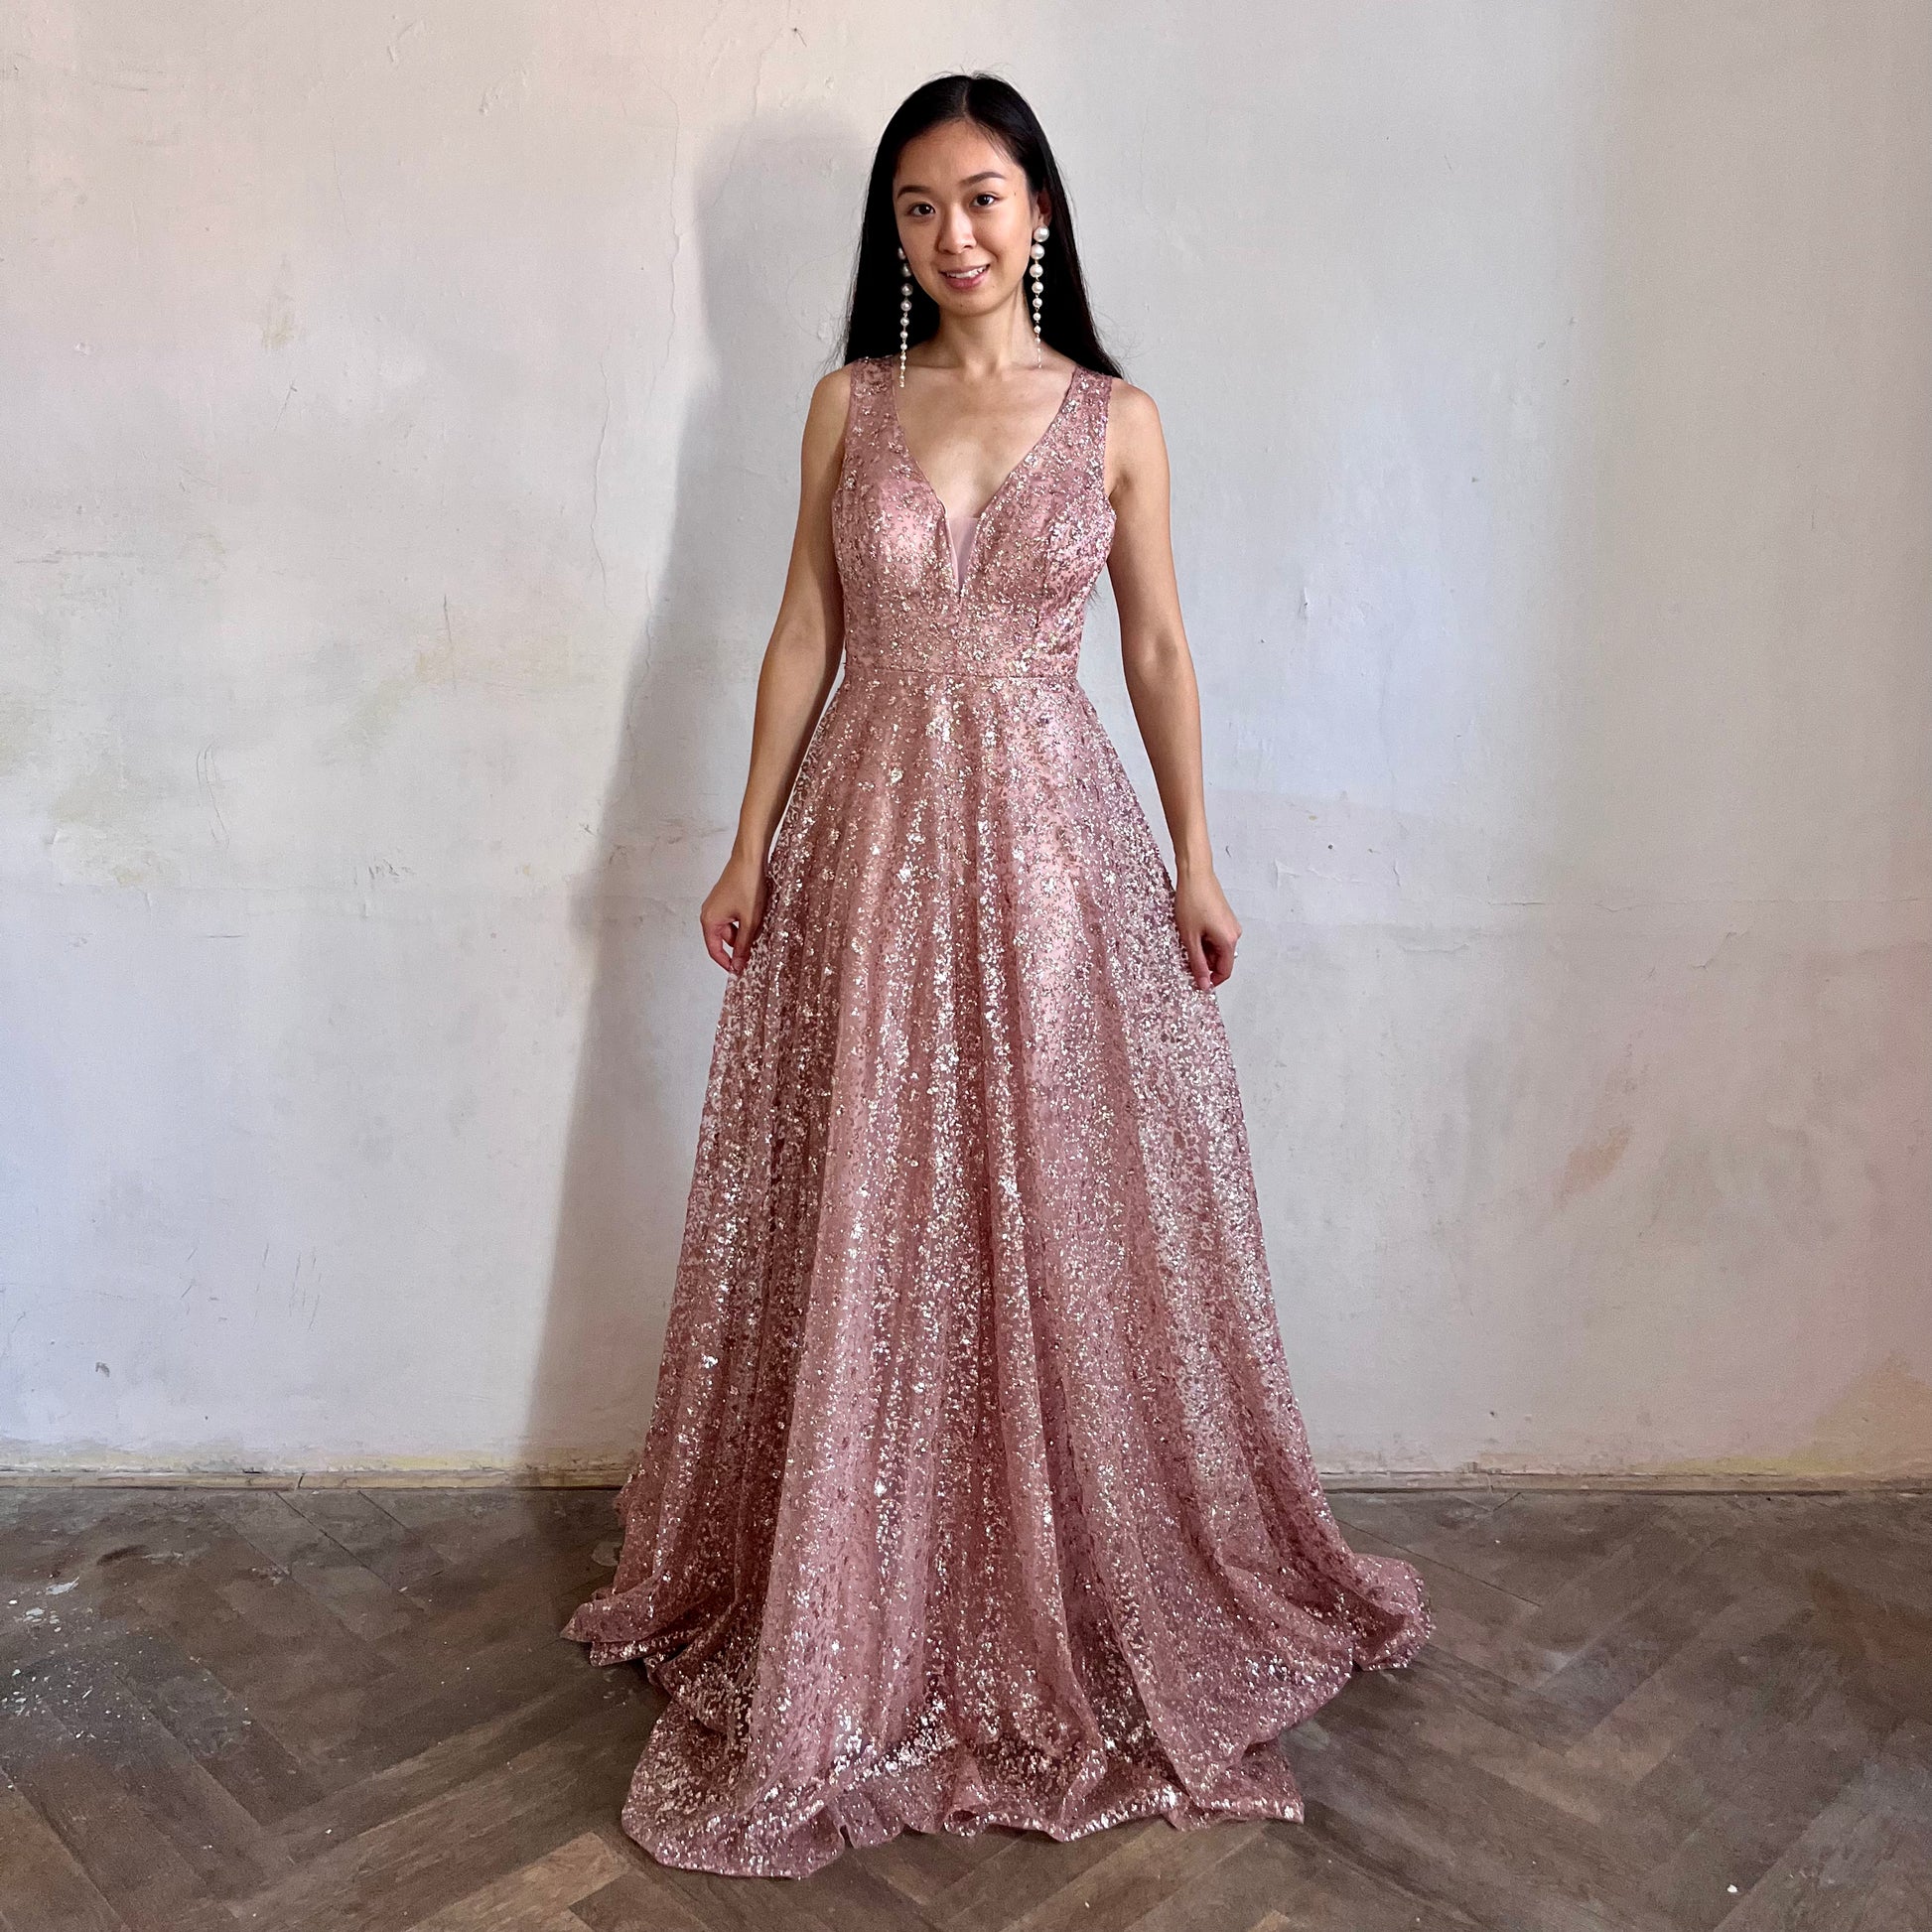 Modelka asijského původu pózující zepředu oblečená ve světle růžových třpytivých společenských šatech